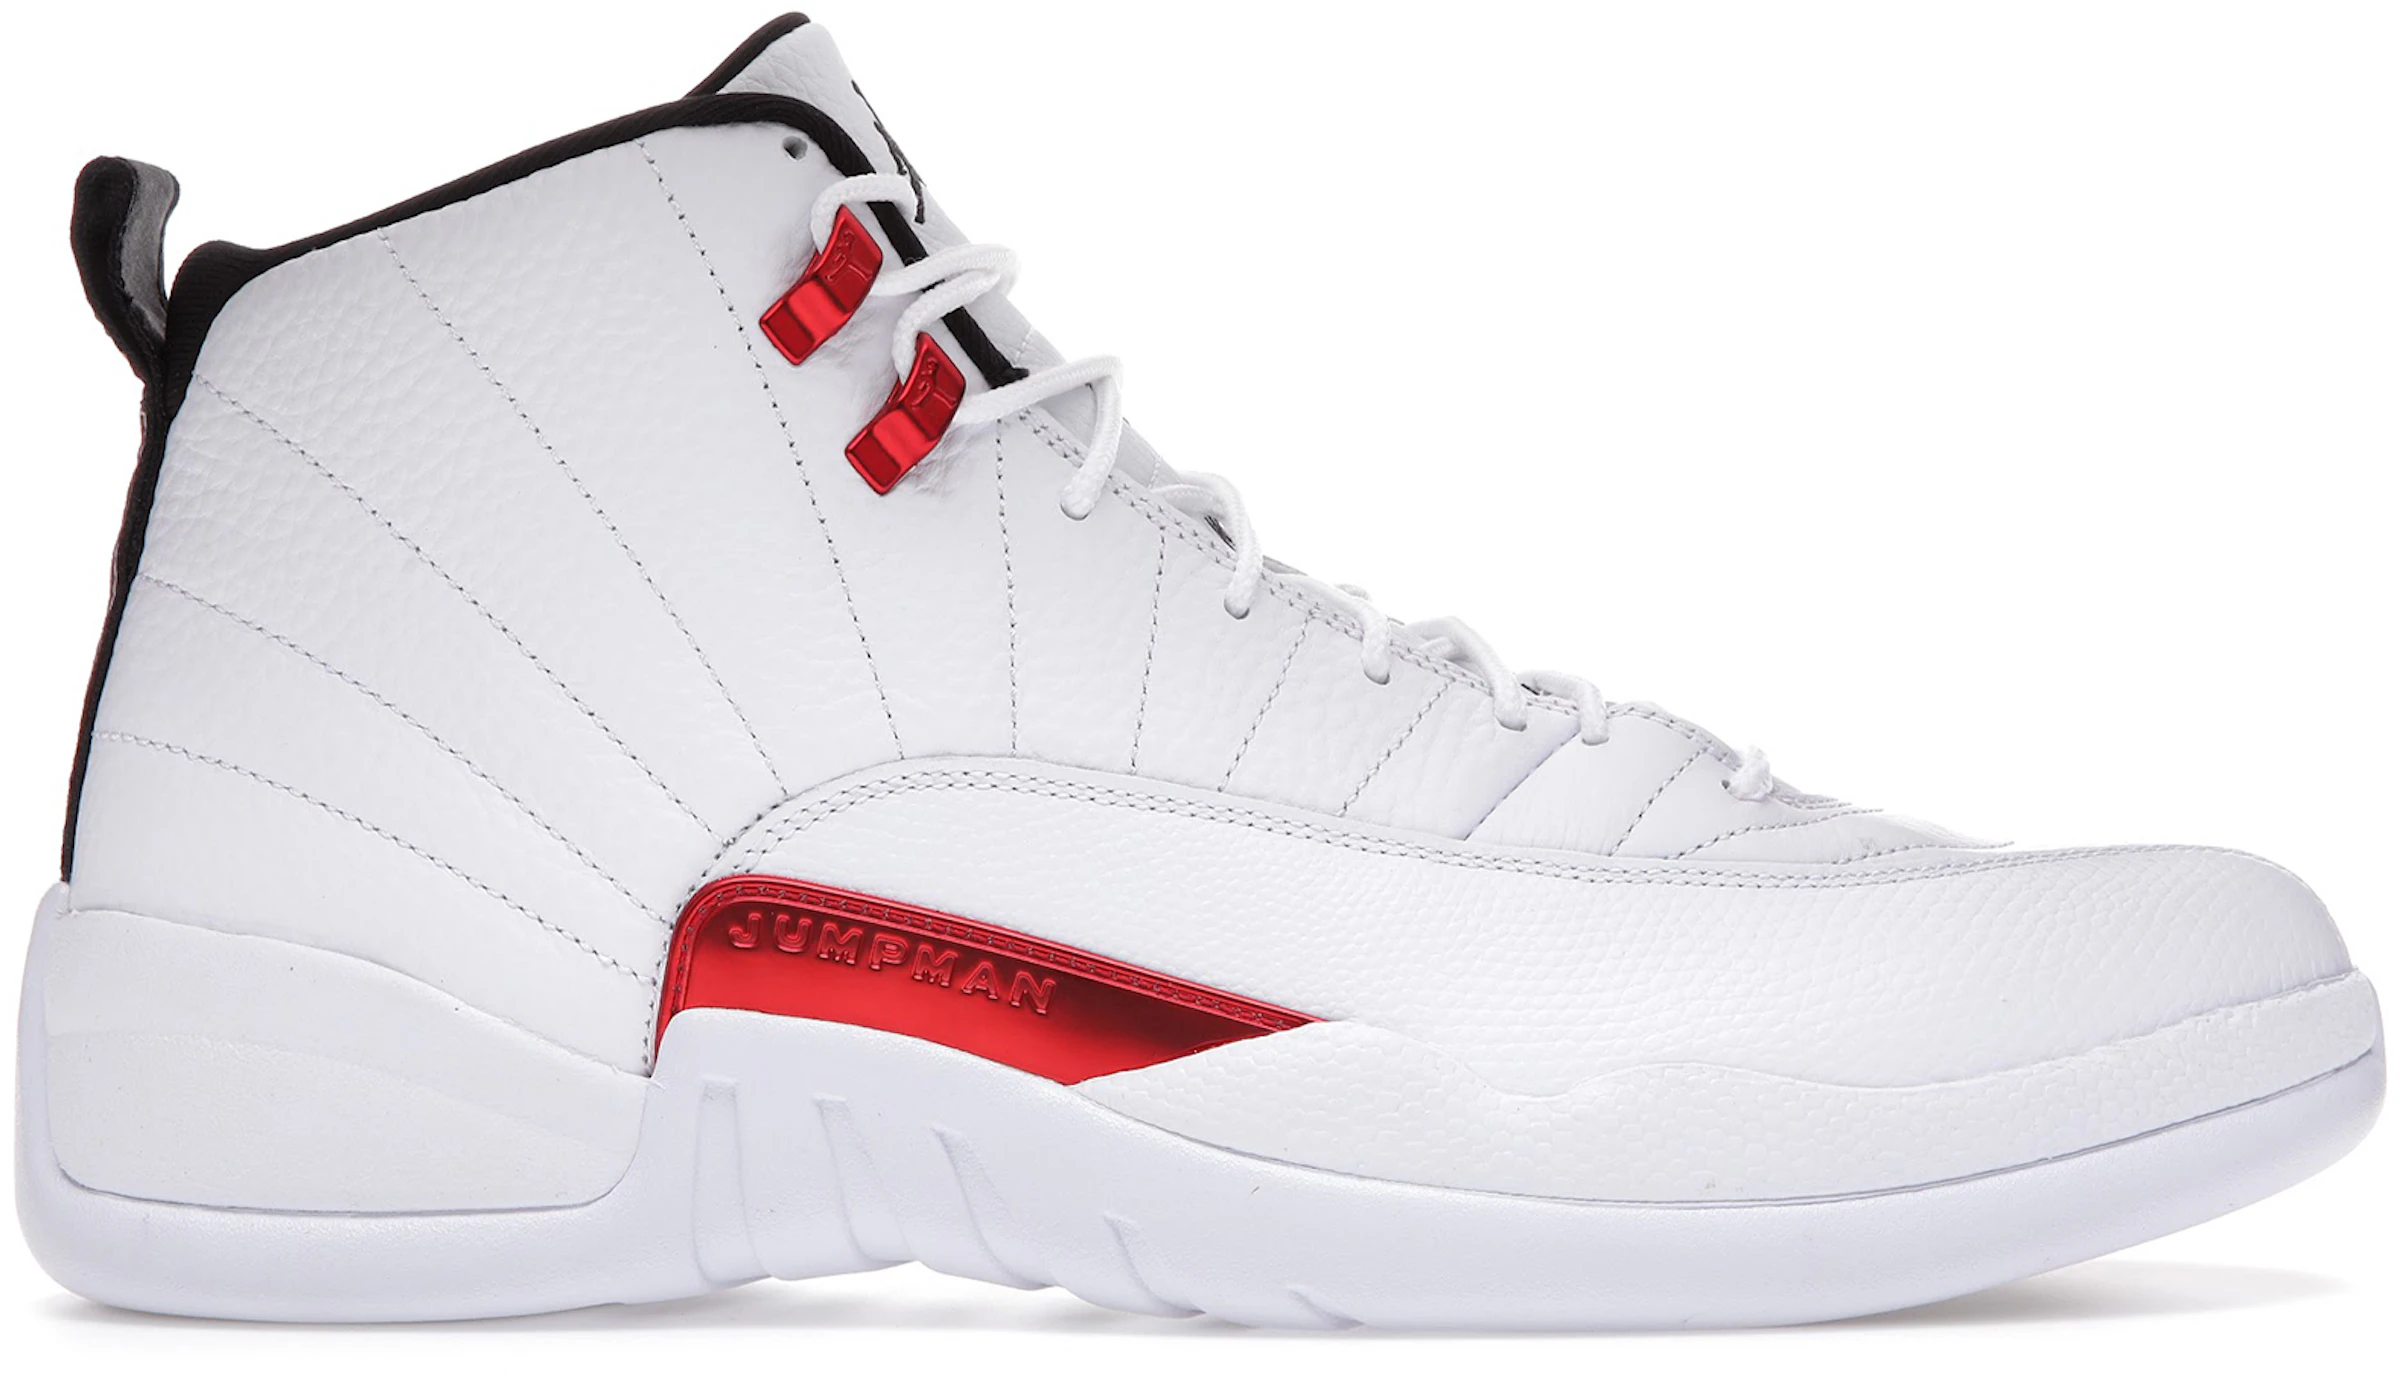 Compra Air Jordan Calzado sneakers nuevos - StockX